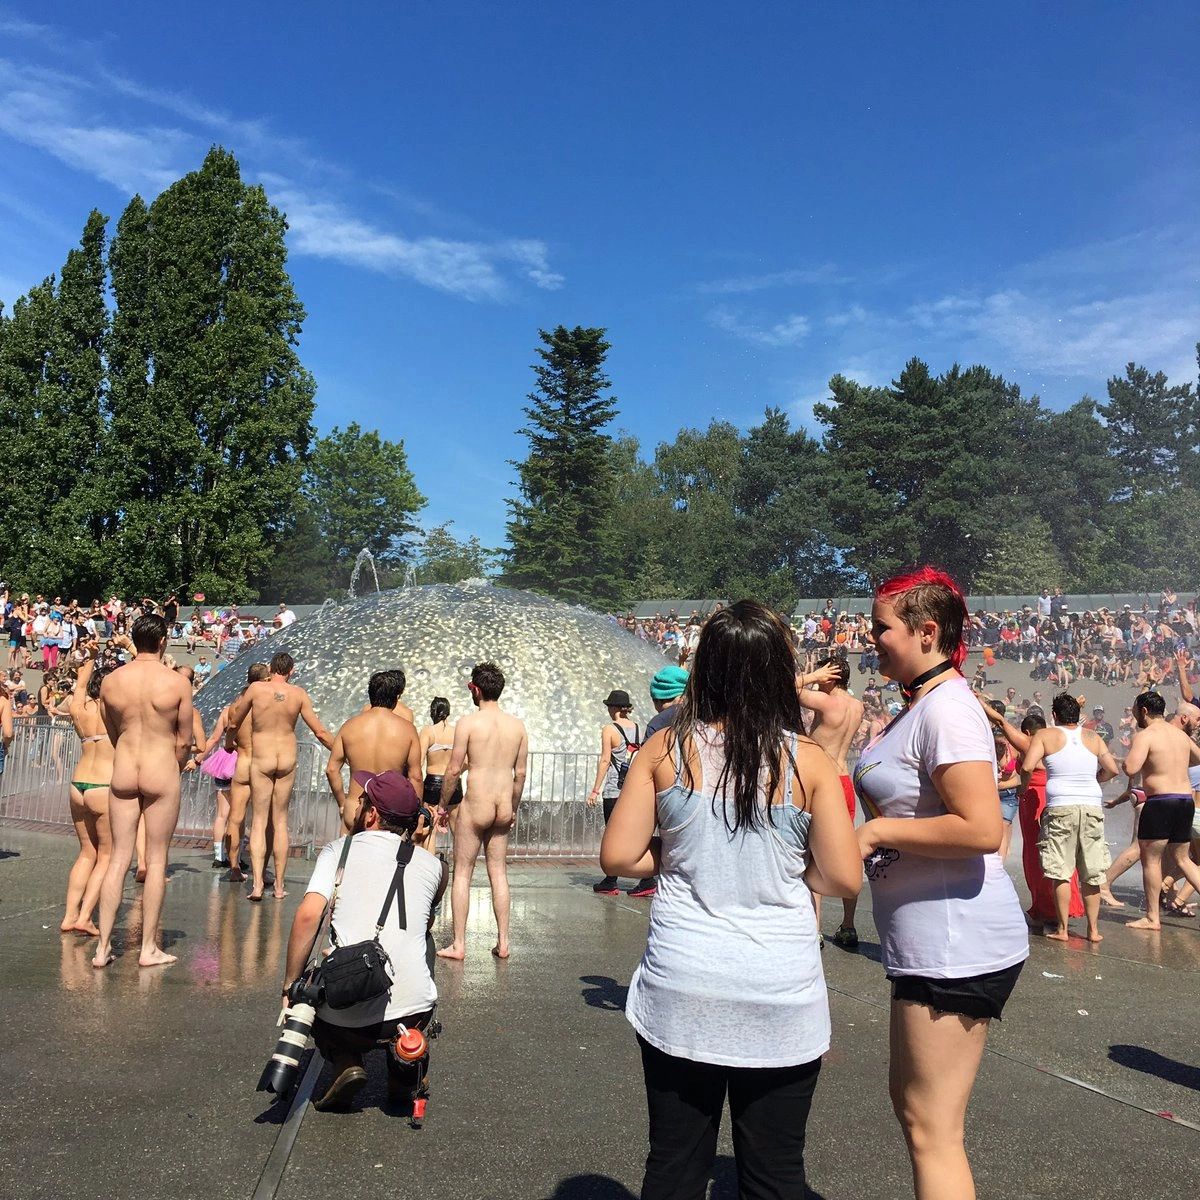 Legal Nudity in Seattle, WA